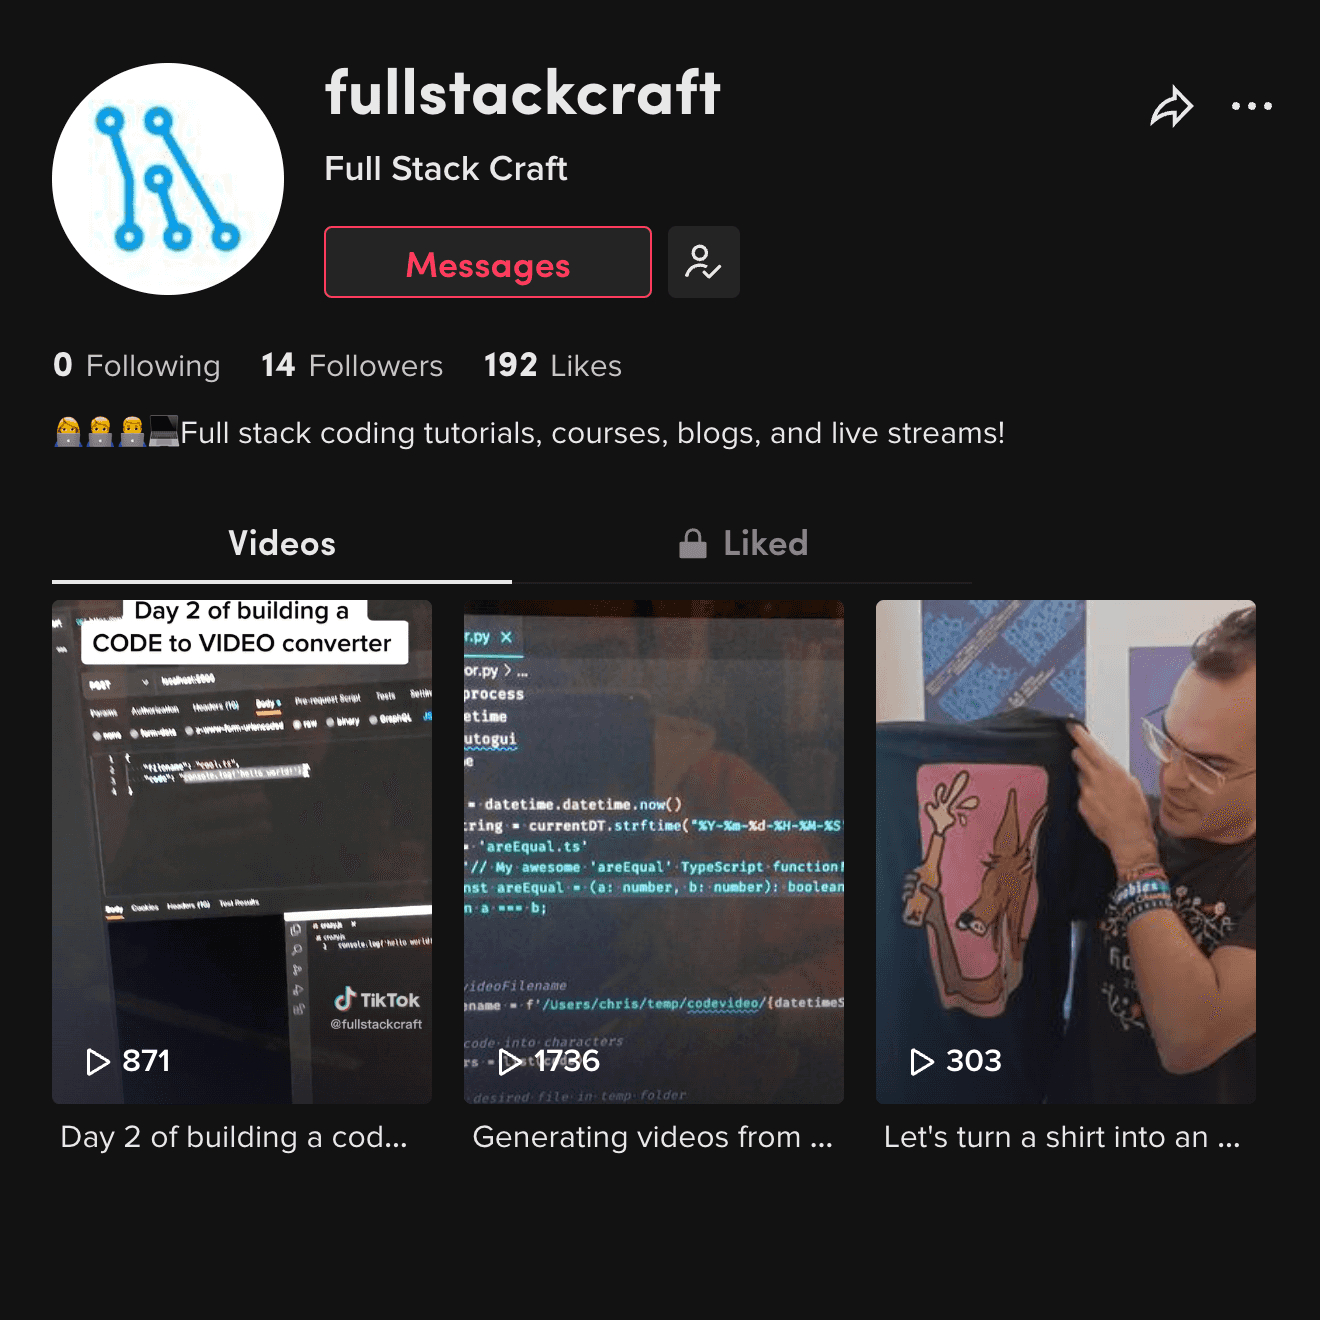 Full Stack Craft's TikTok account.